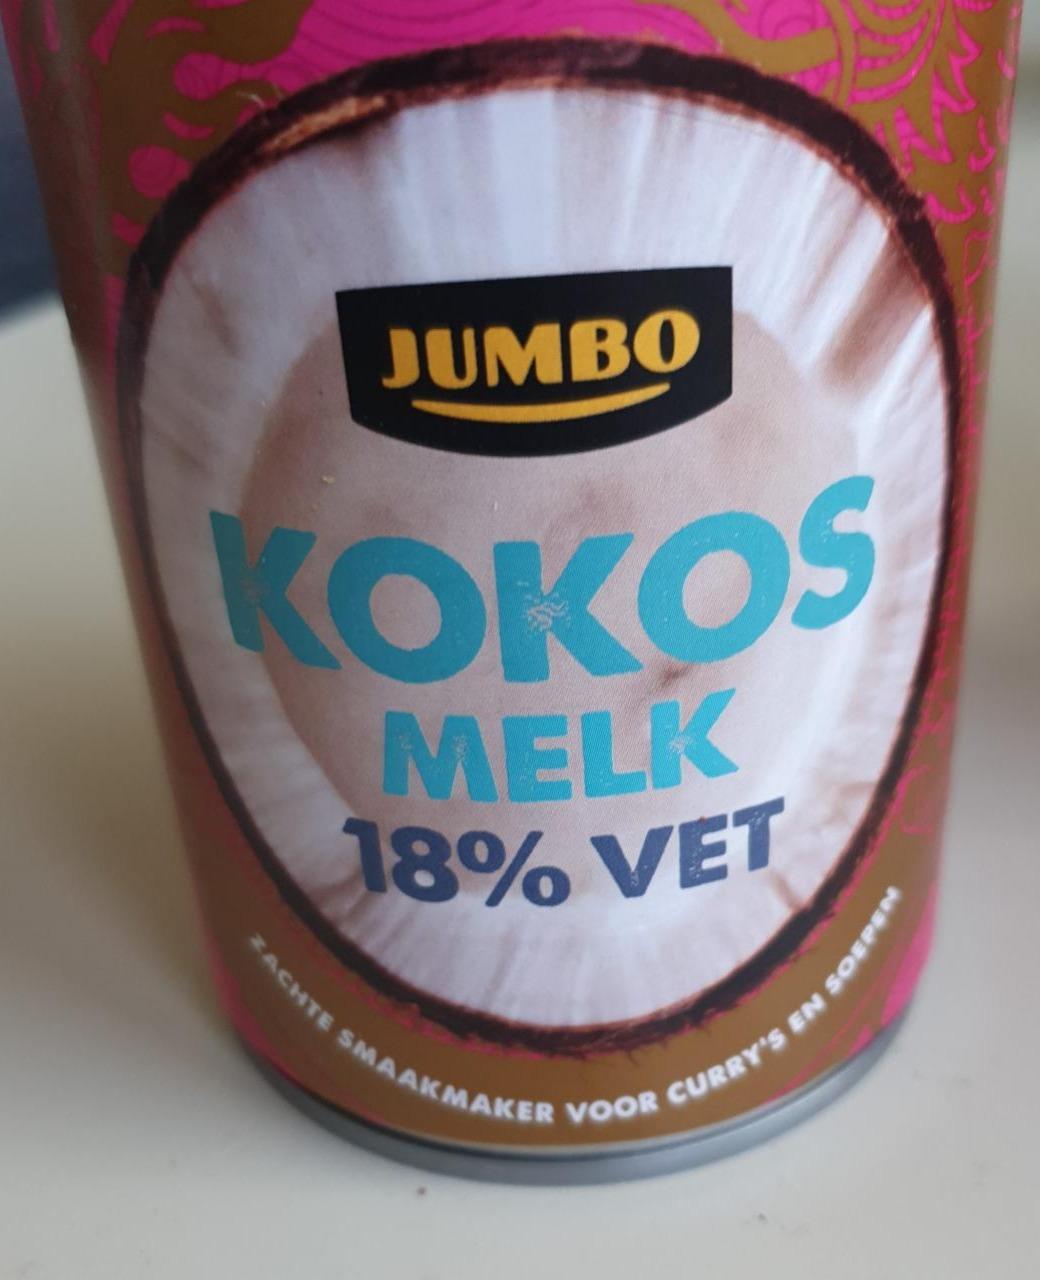 Fotografie - Kokos Melk 18% vet Jumbo